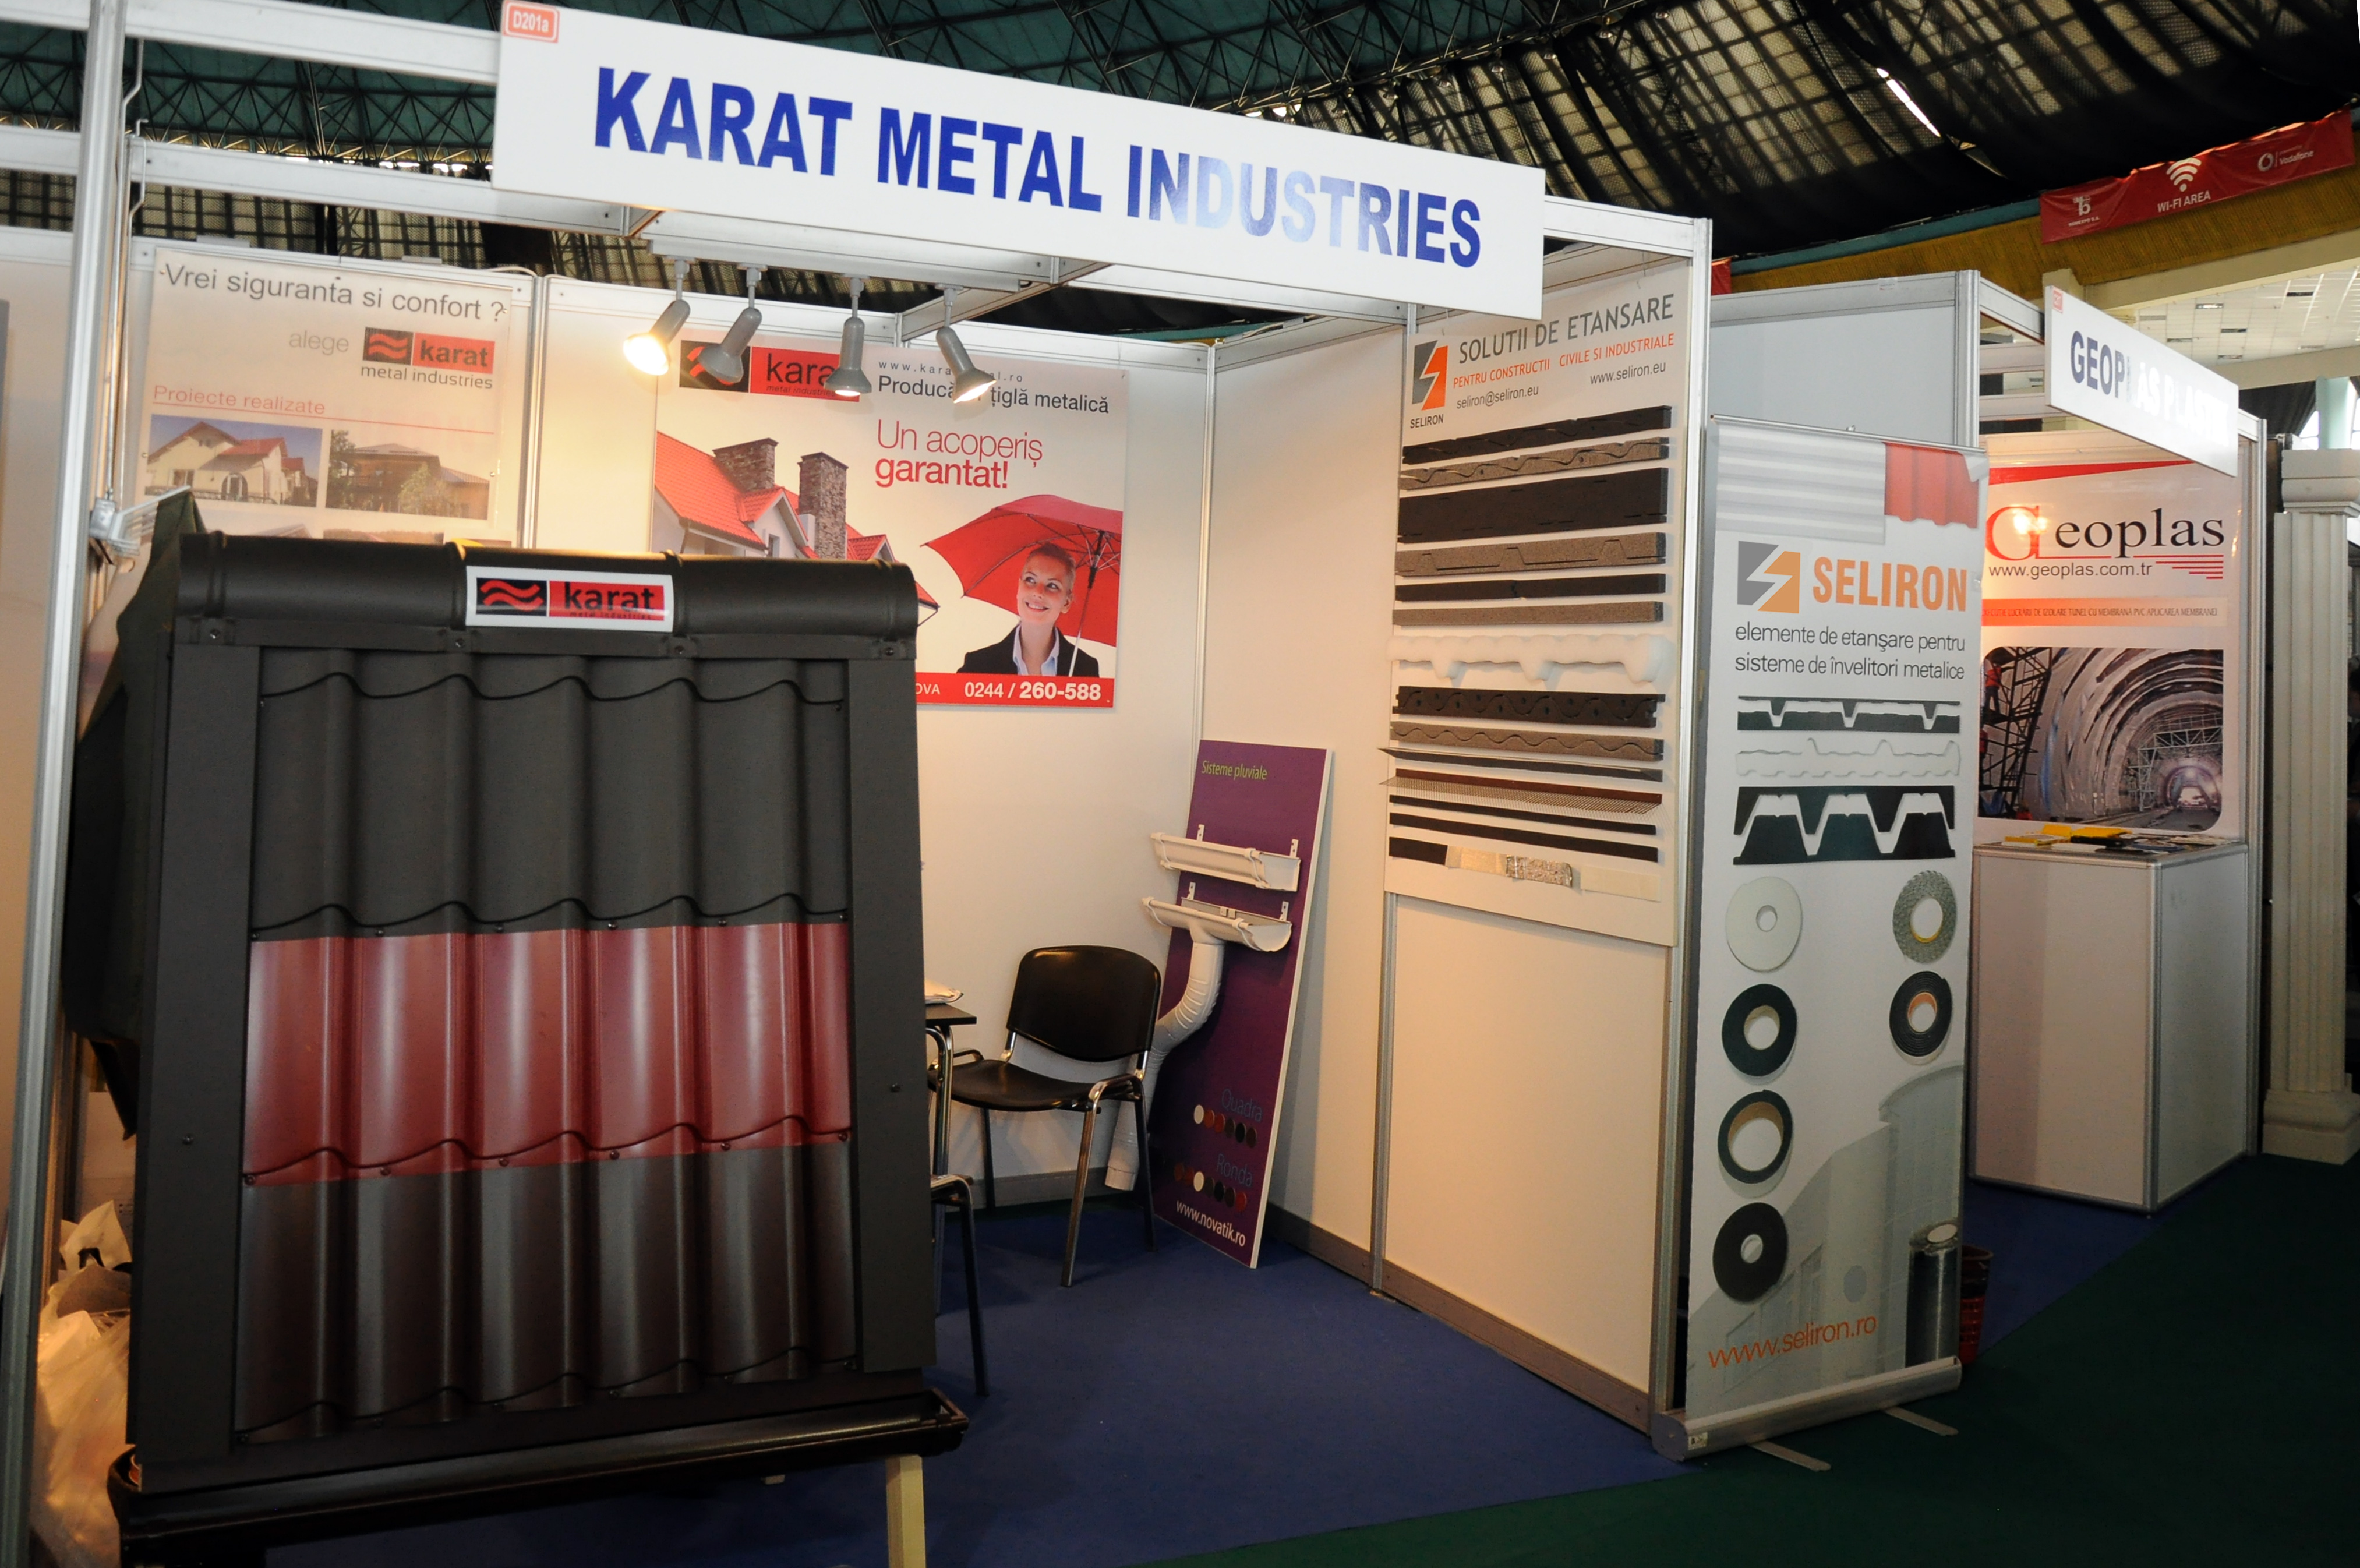 Karat Metal Industries - Karat Metal Industries